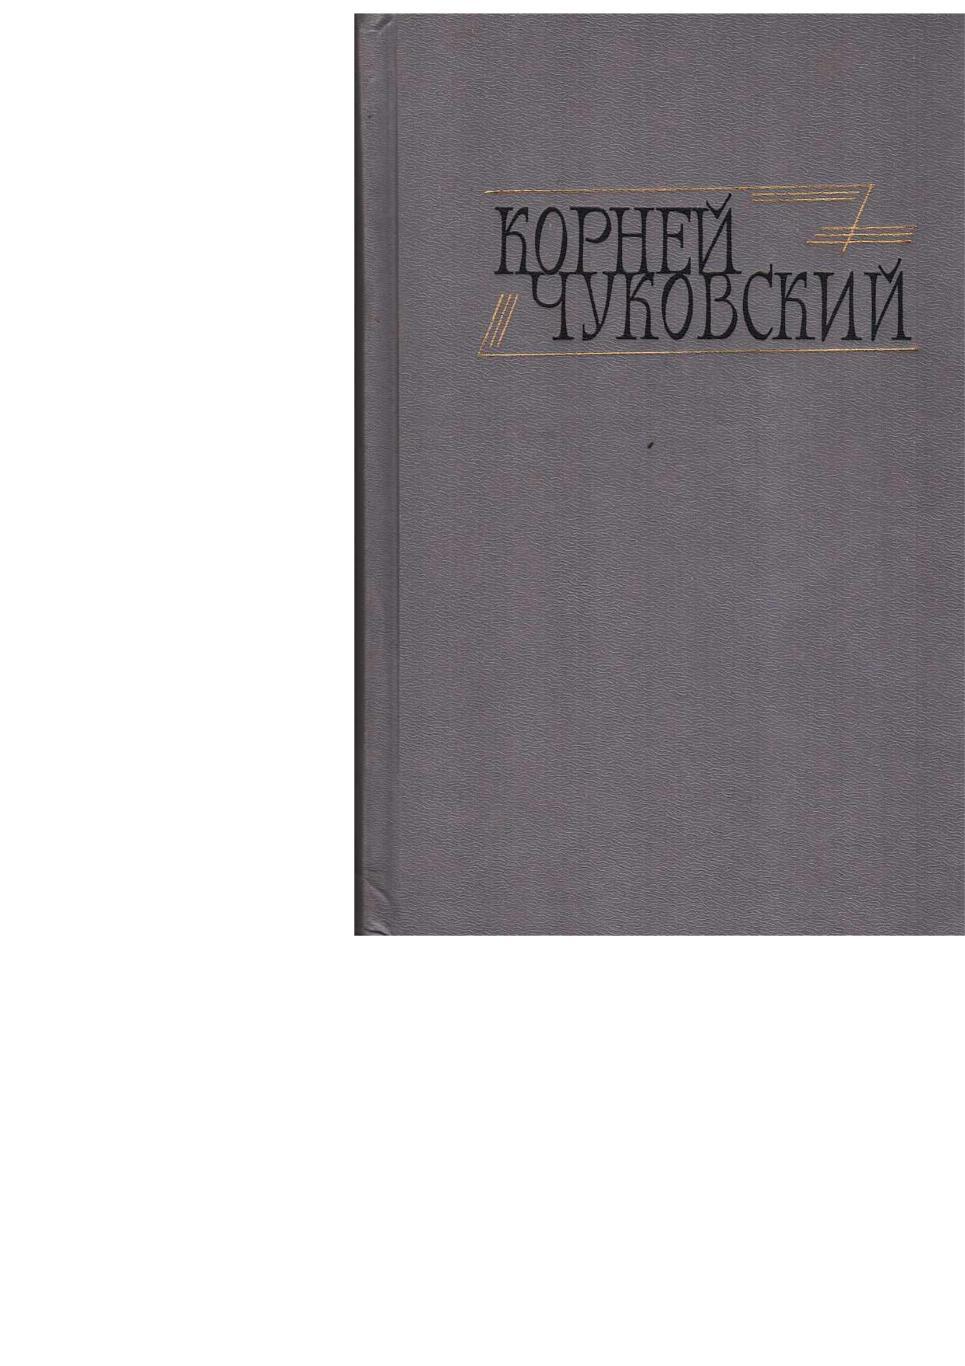 Чуковский К.И. Сочинения в двух томах. Т. 1. – М., 1990.